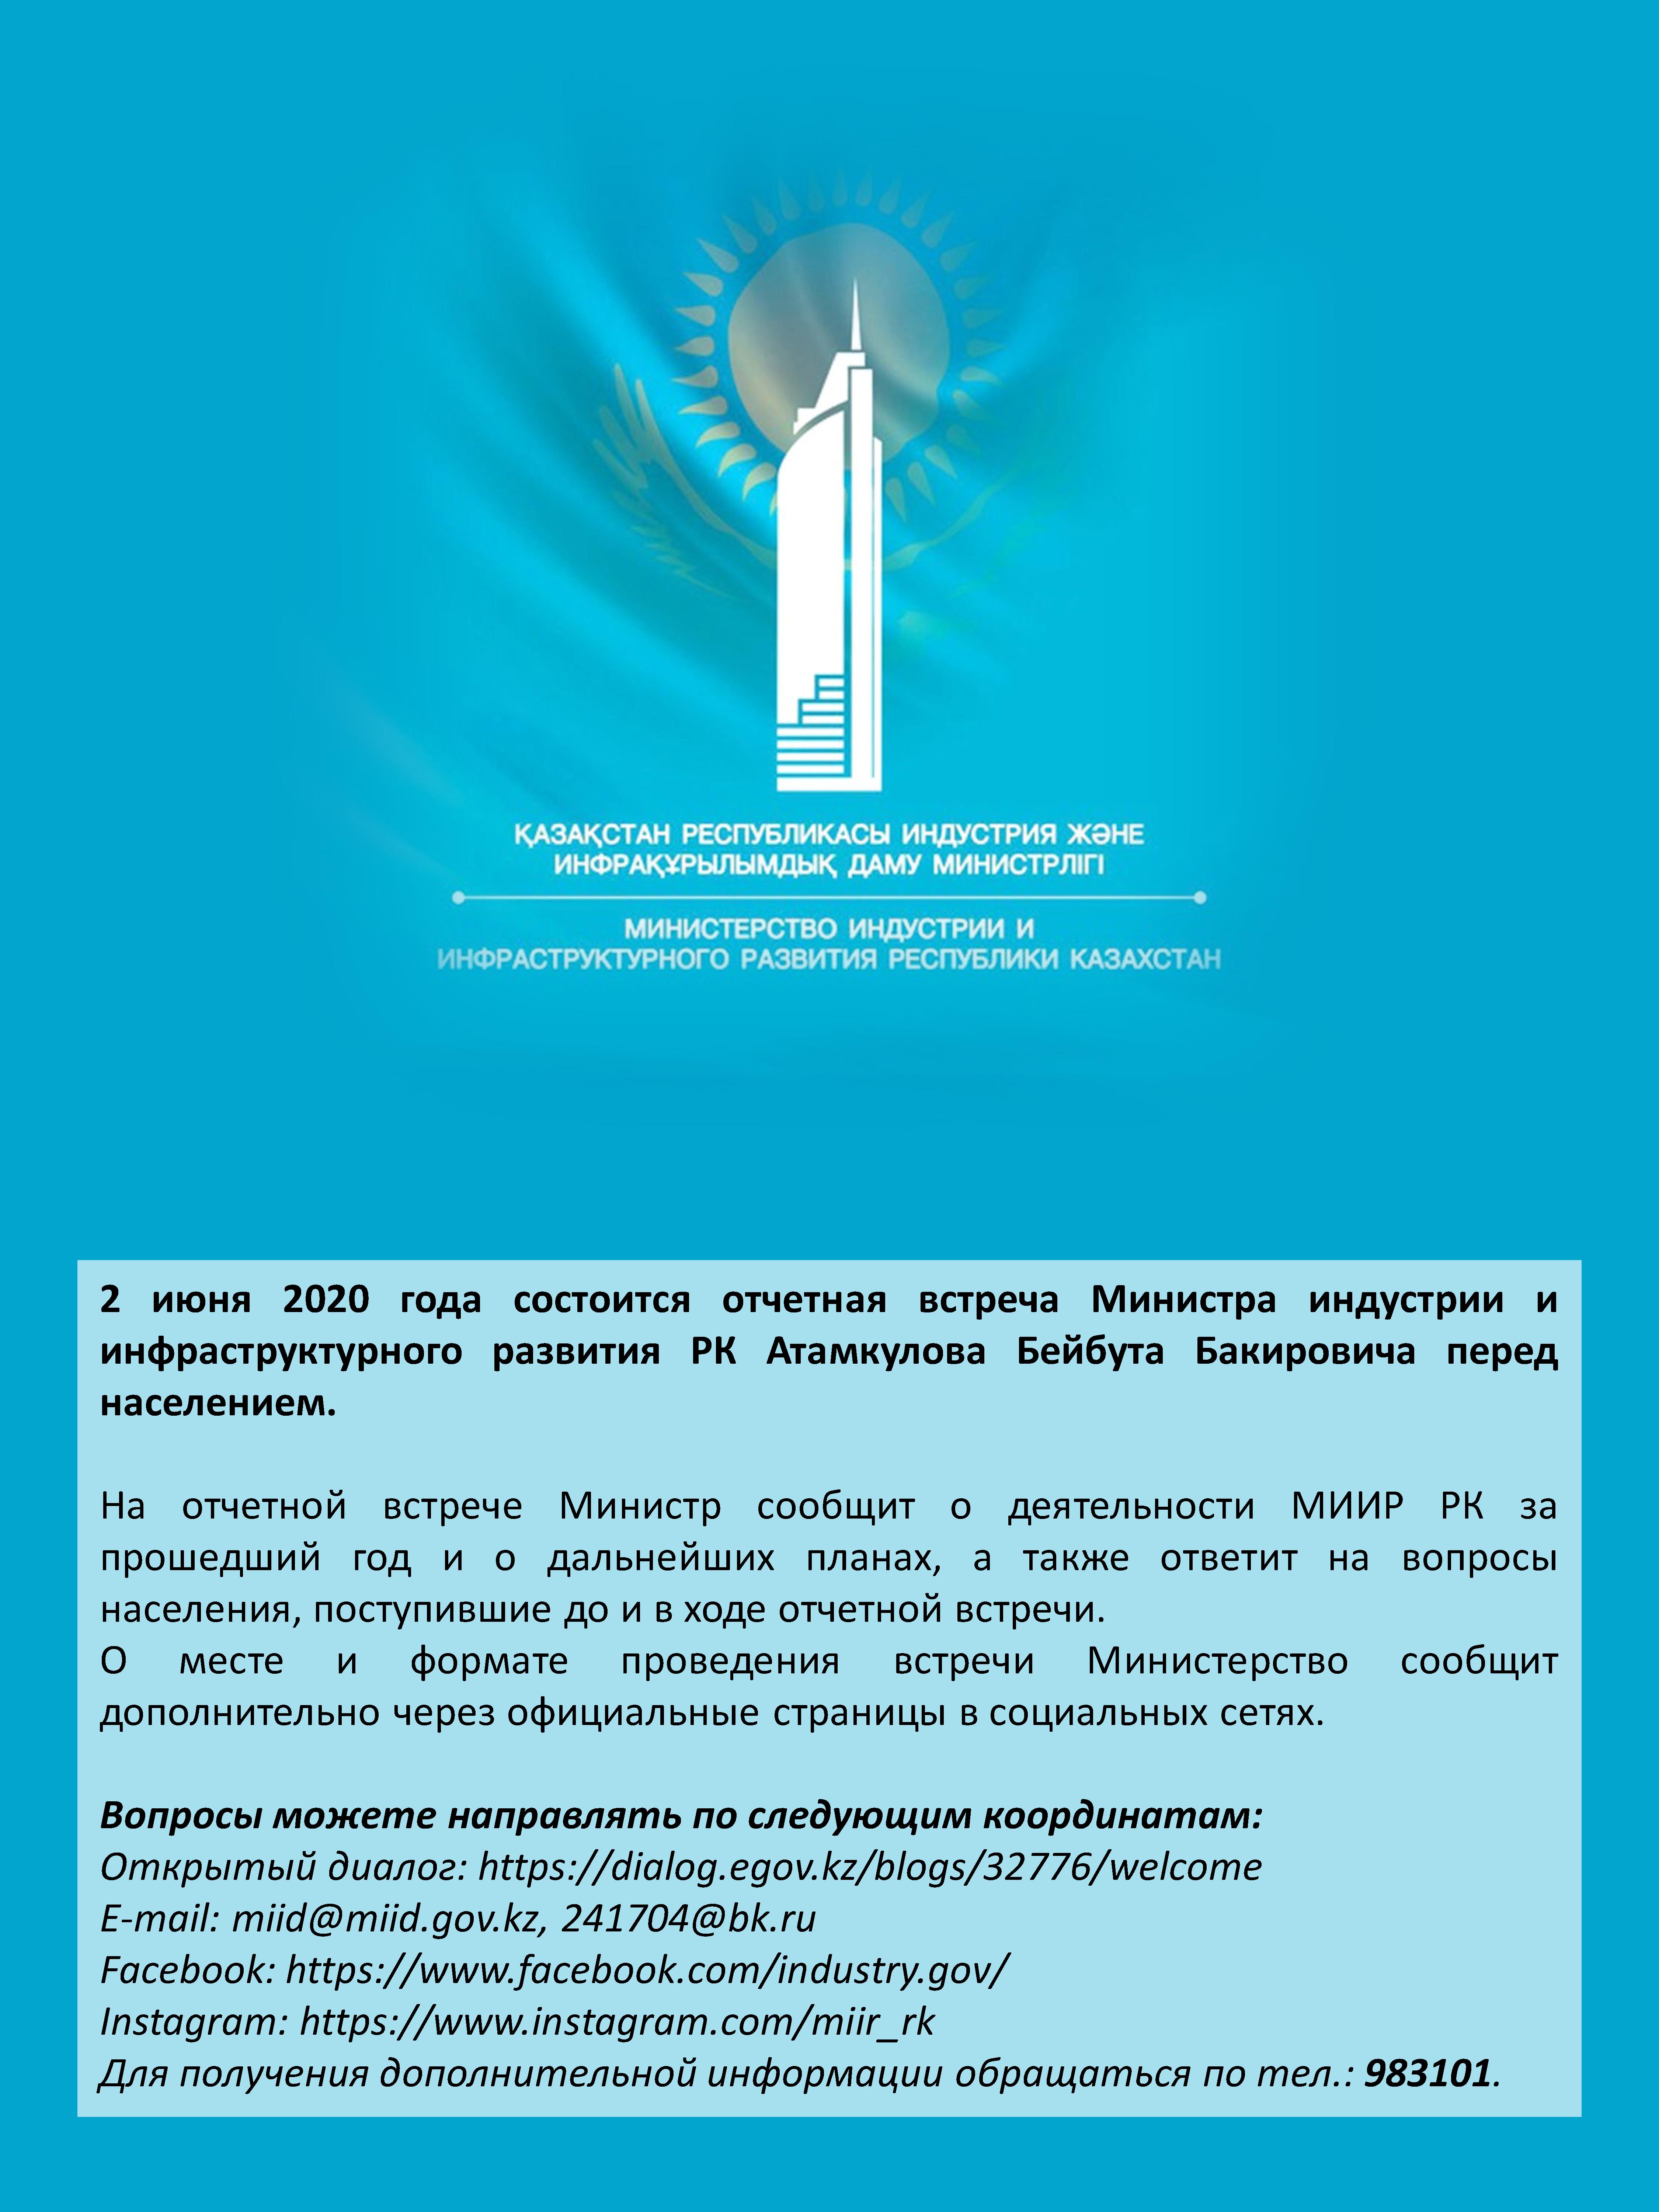 2 июня 2020 года состоится отчетная встреча Министра индустрии и инфраструктурного развития РК Атамкулова Бейбута Бакировича перед населением.